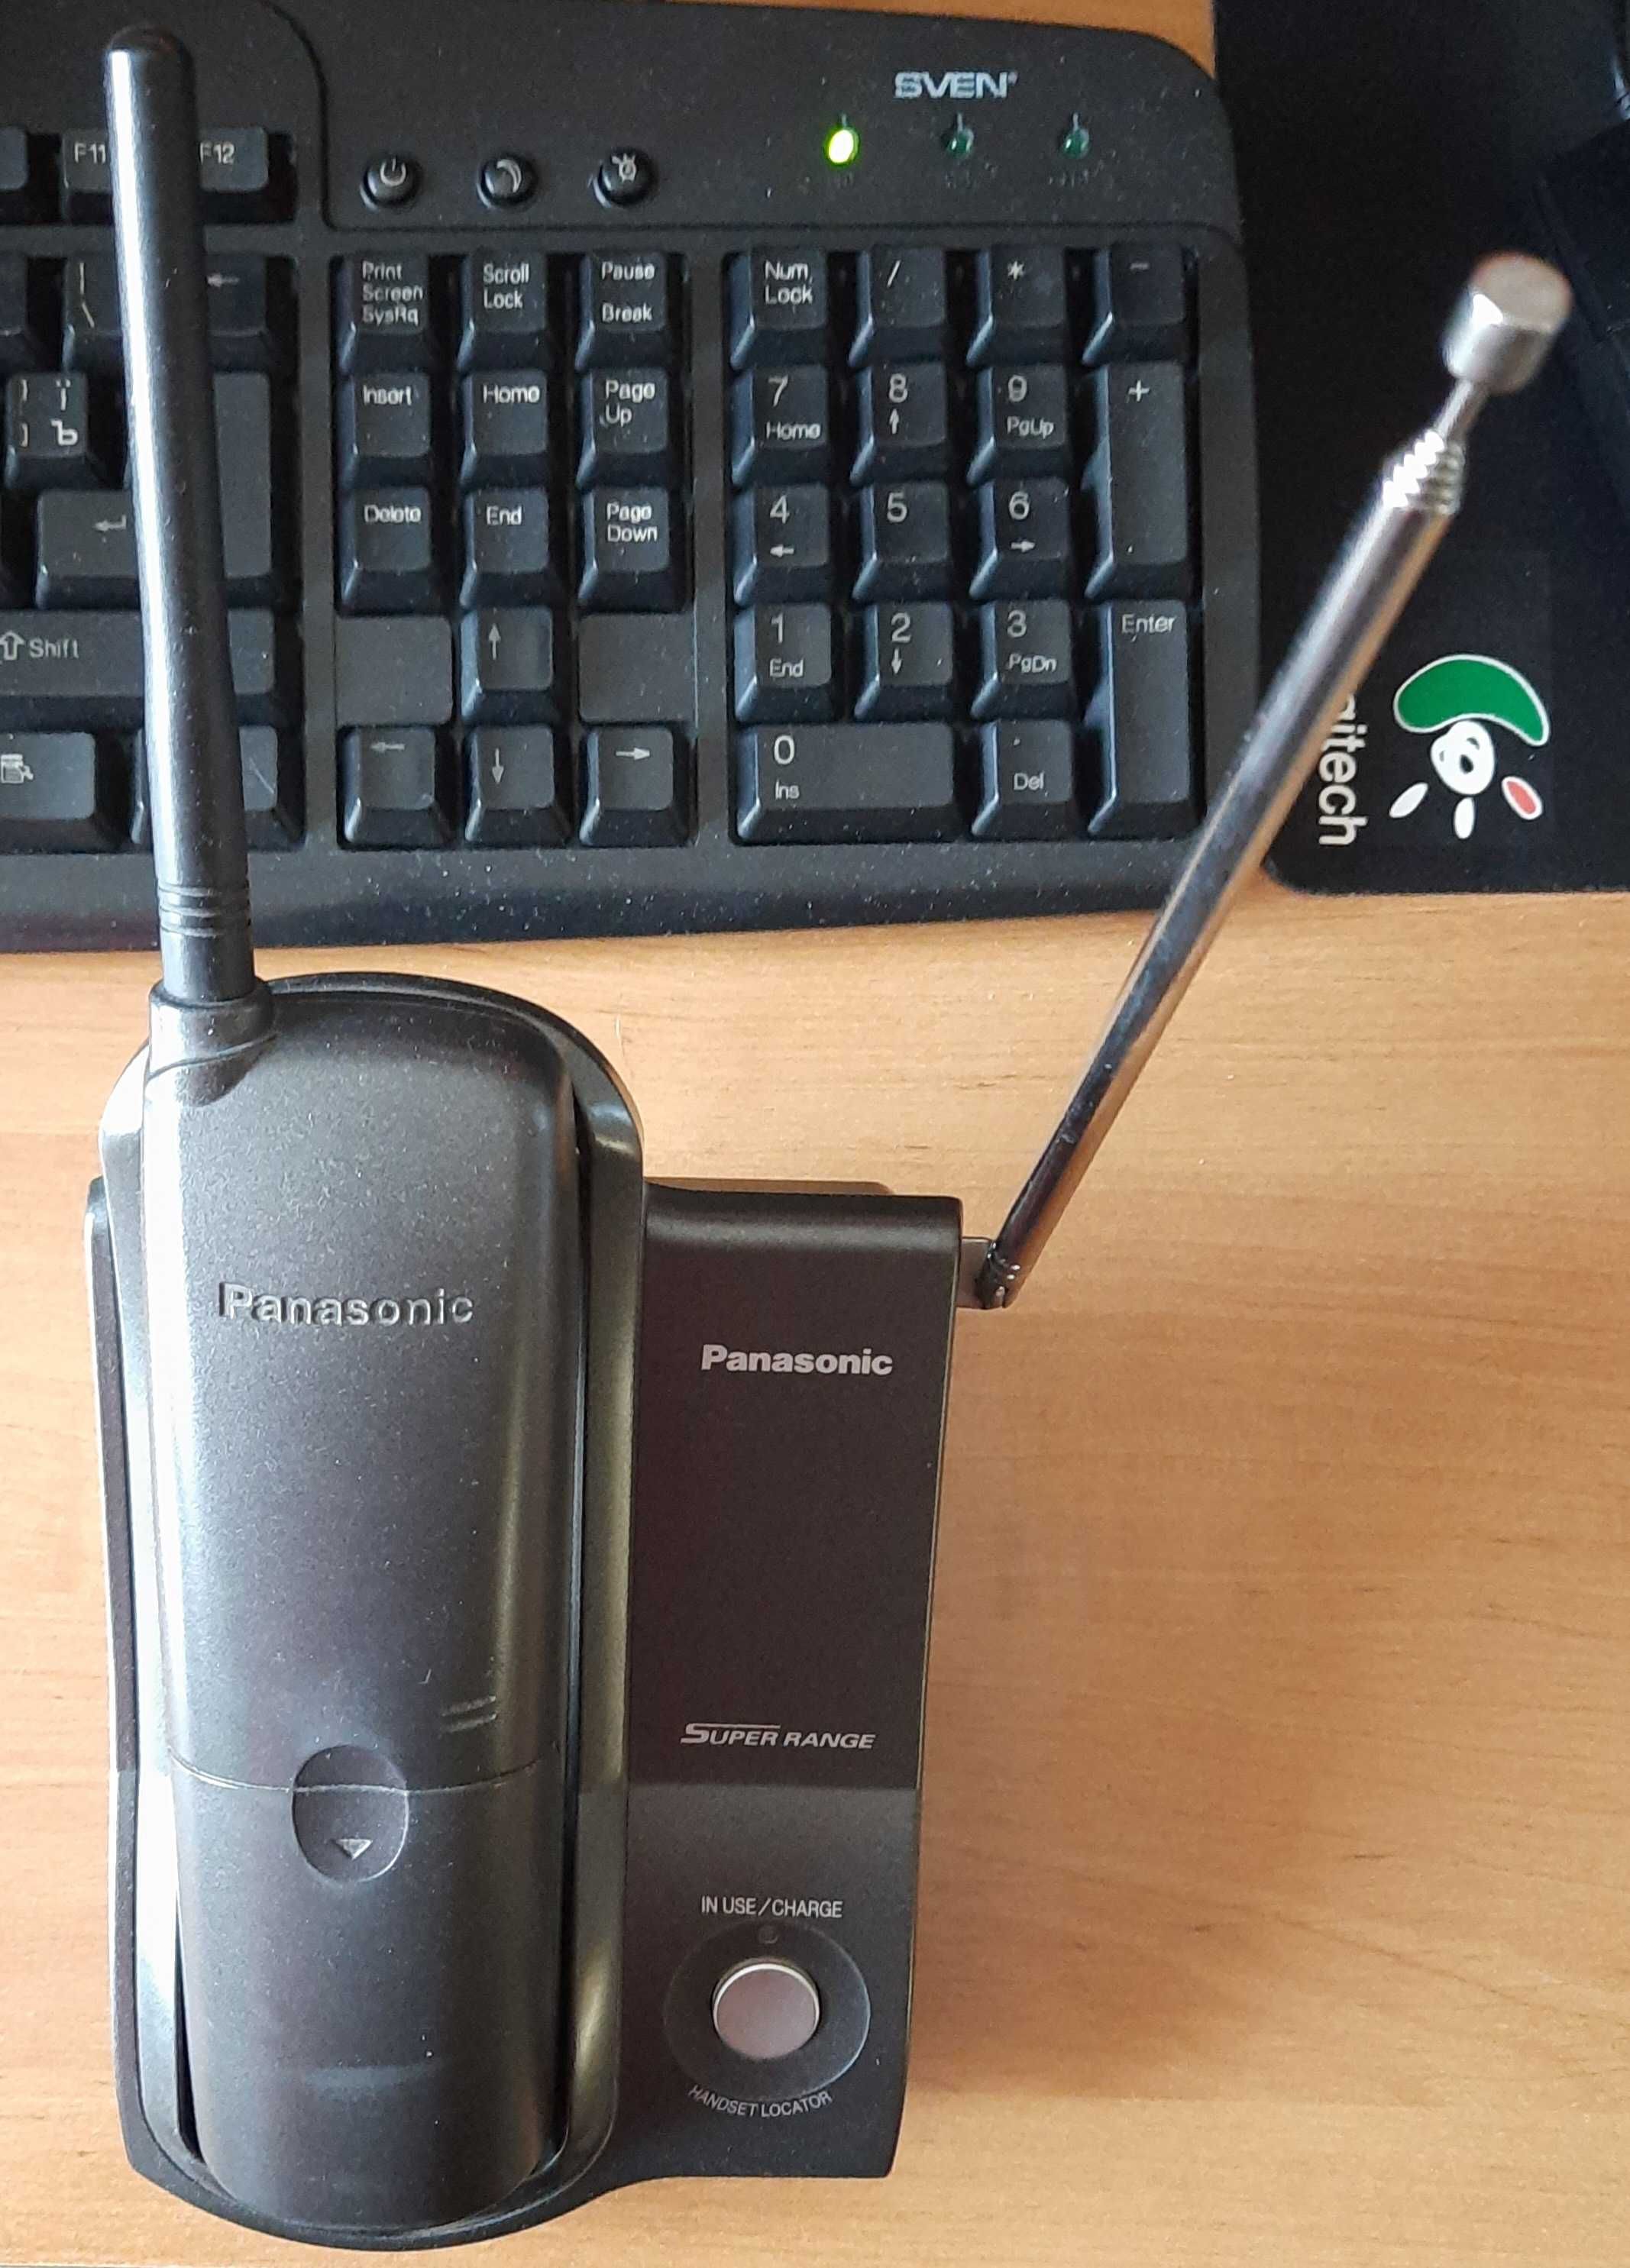 Радио телефон Panasonic и стационарный телефон Euroline.